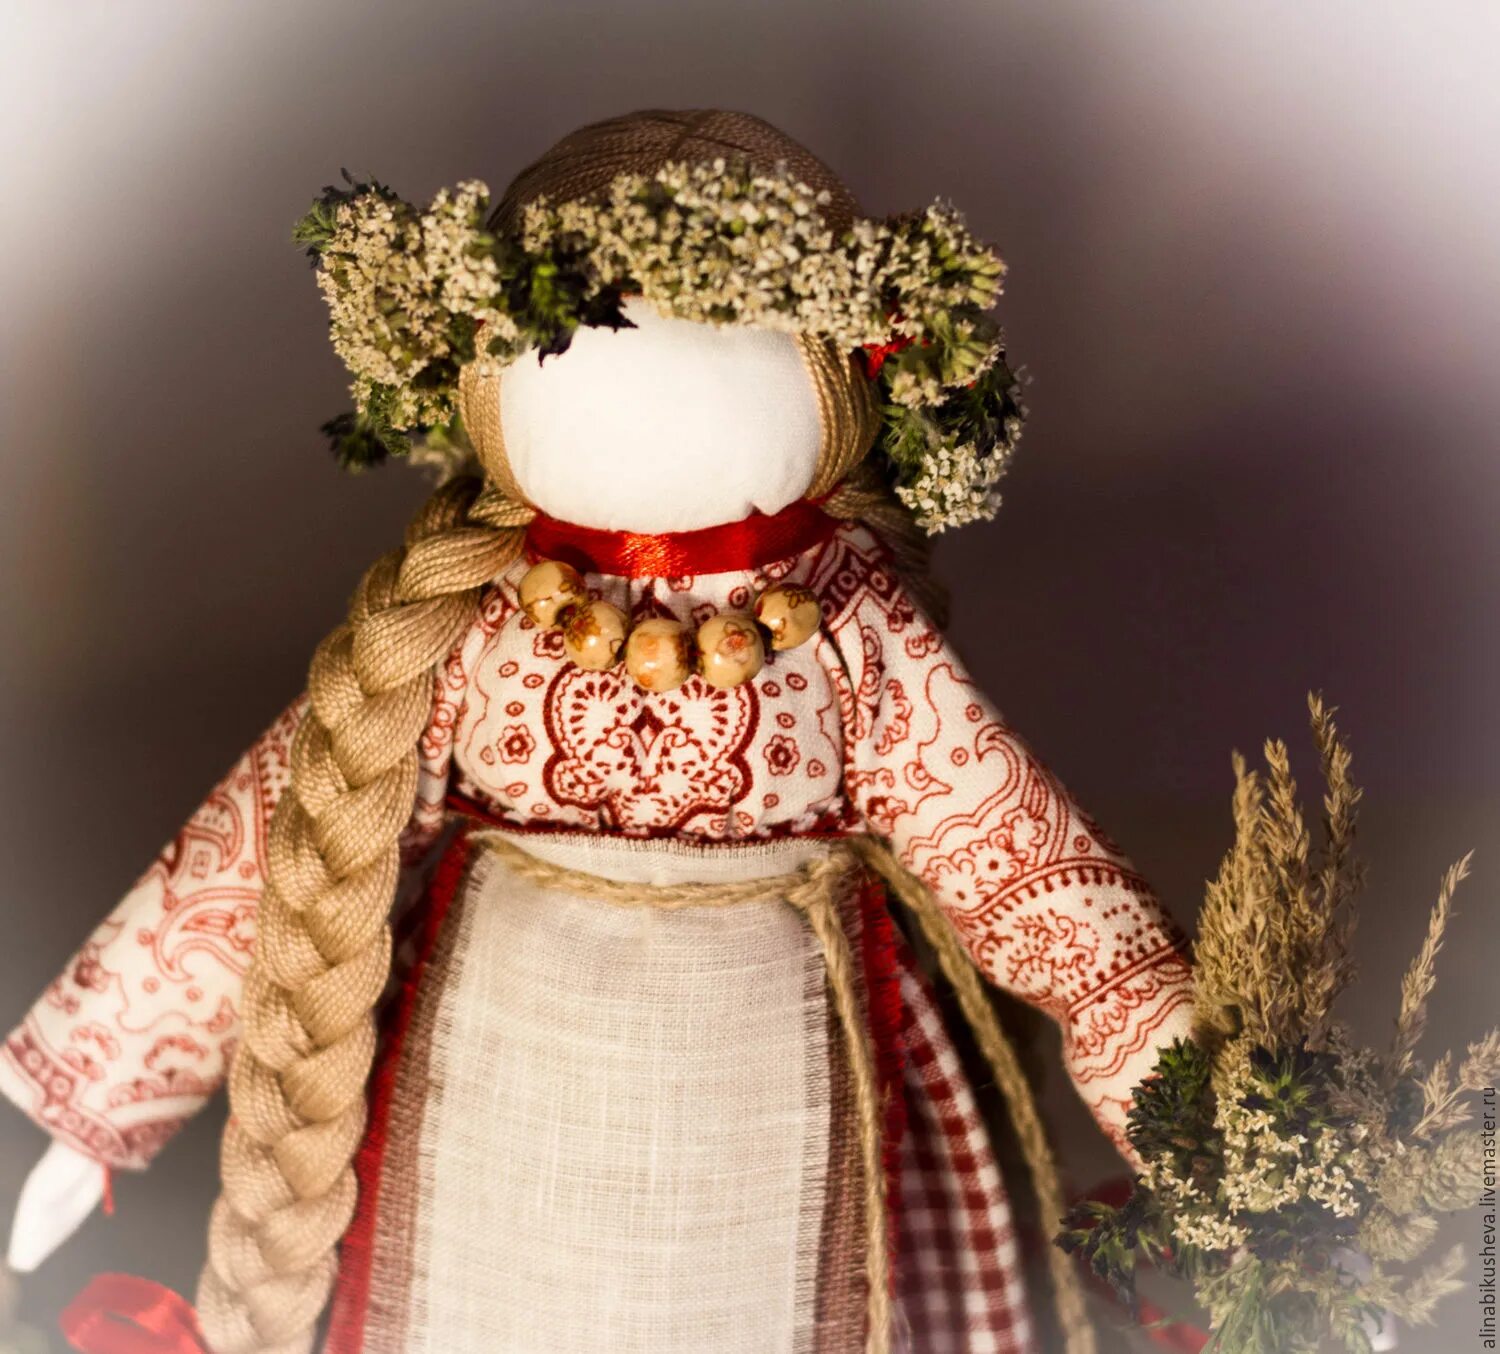 Народная игрушка оберег. Народная тряпичная кукла Берегиня. Славянская обережная кукла Берегиня. Белорусская кукла Берегиня. Тряпичные куклы обереги Берегиня.